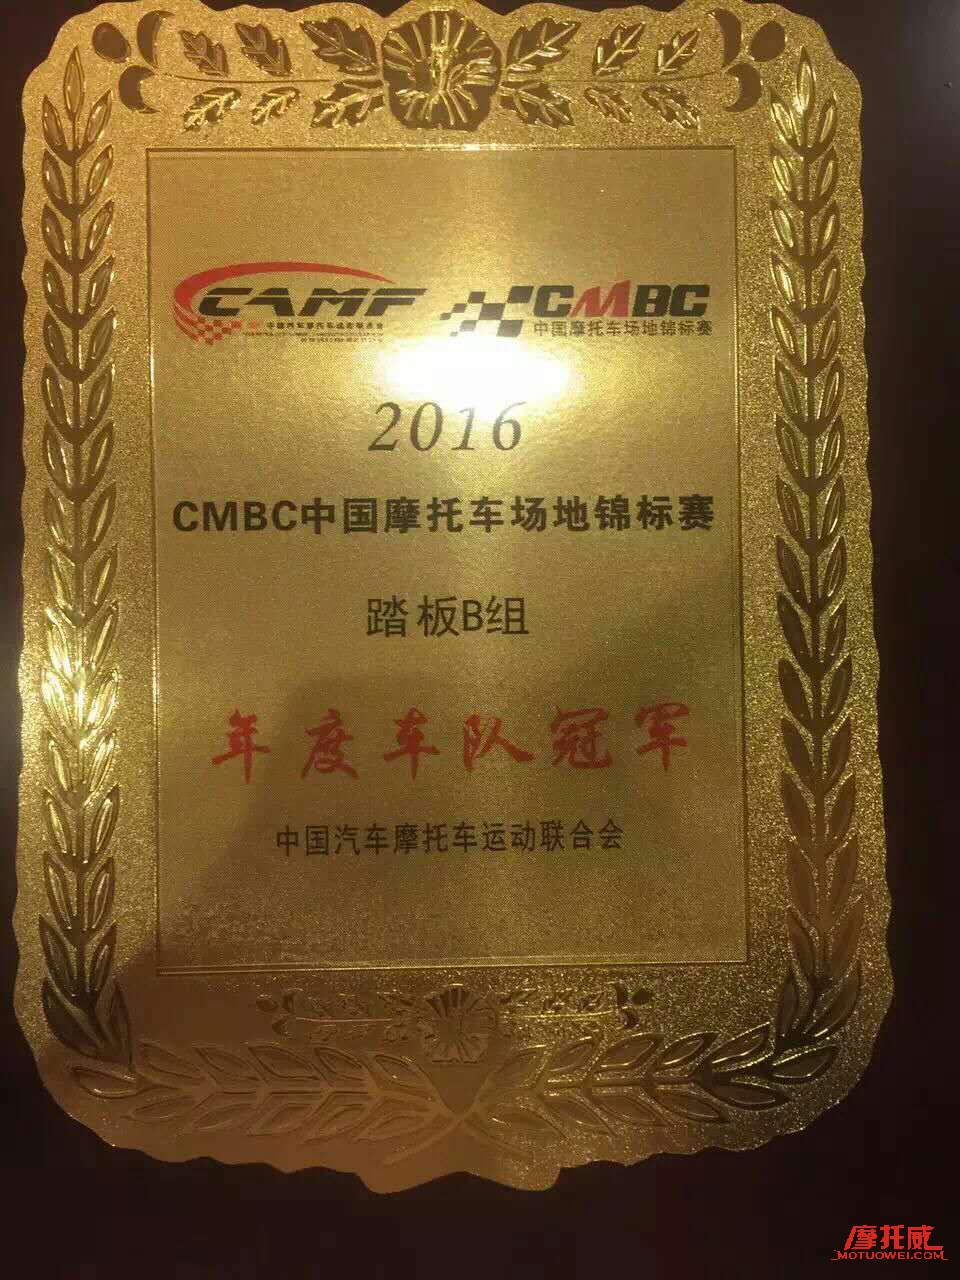  十寸绵羊王——巨蟒车队获得CMBC年度总冠军